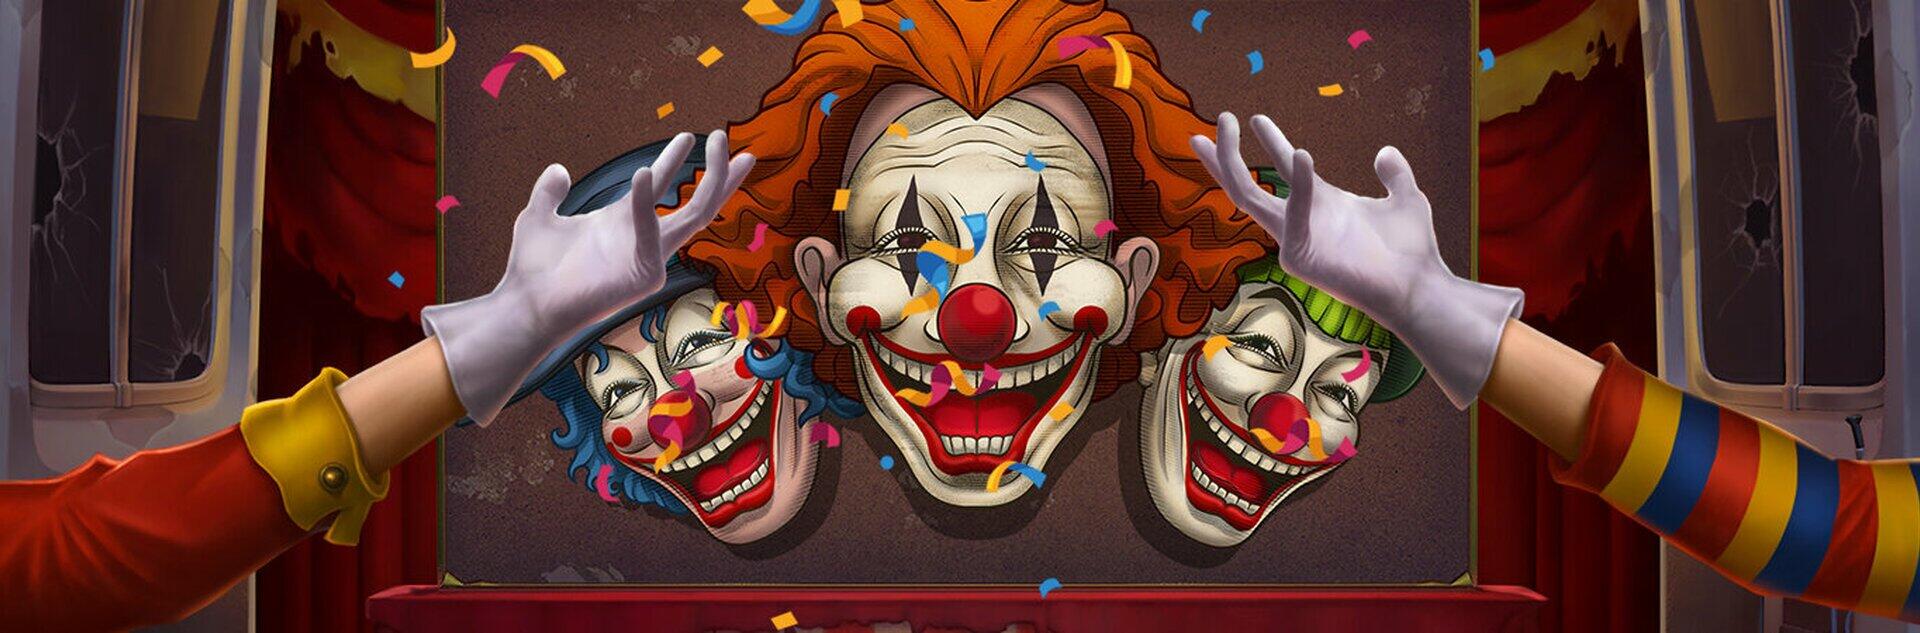 3 Clown Monty Slot